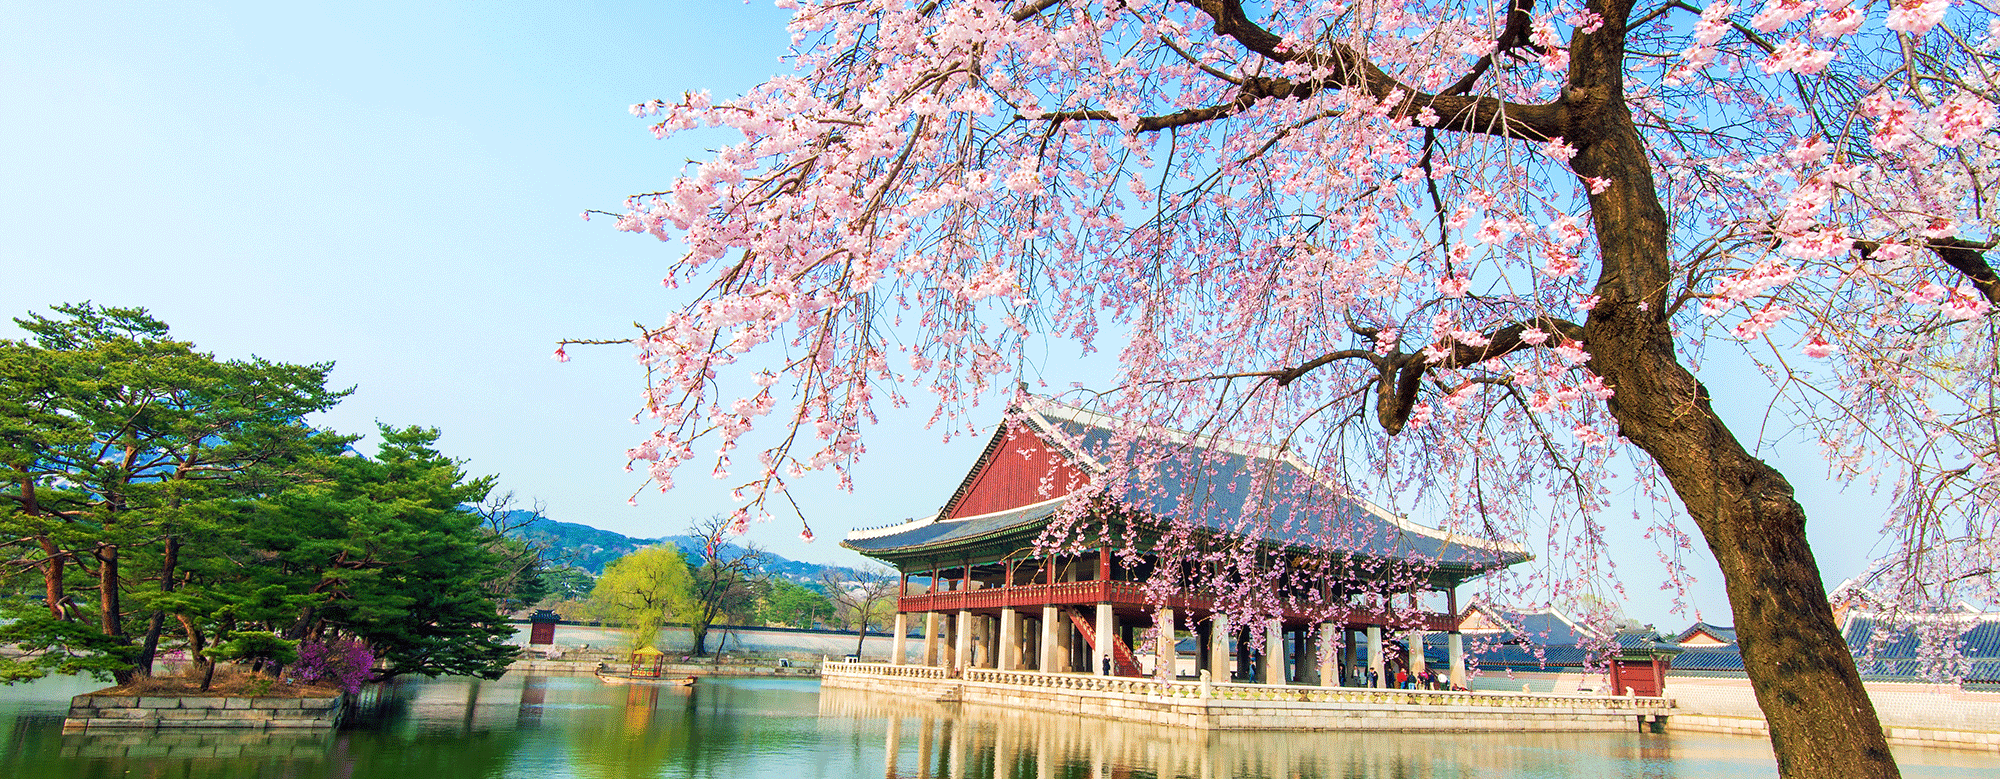 Hàn Quốc xứ kimchi là nơi du lịch với cảnh đẹp và văn hóa tuyệt vời. Seoul sở hữu cung điện Hoàng gia lộng lẫy,